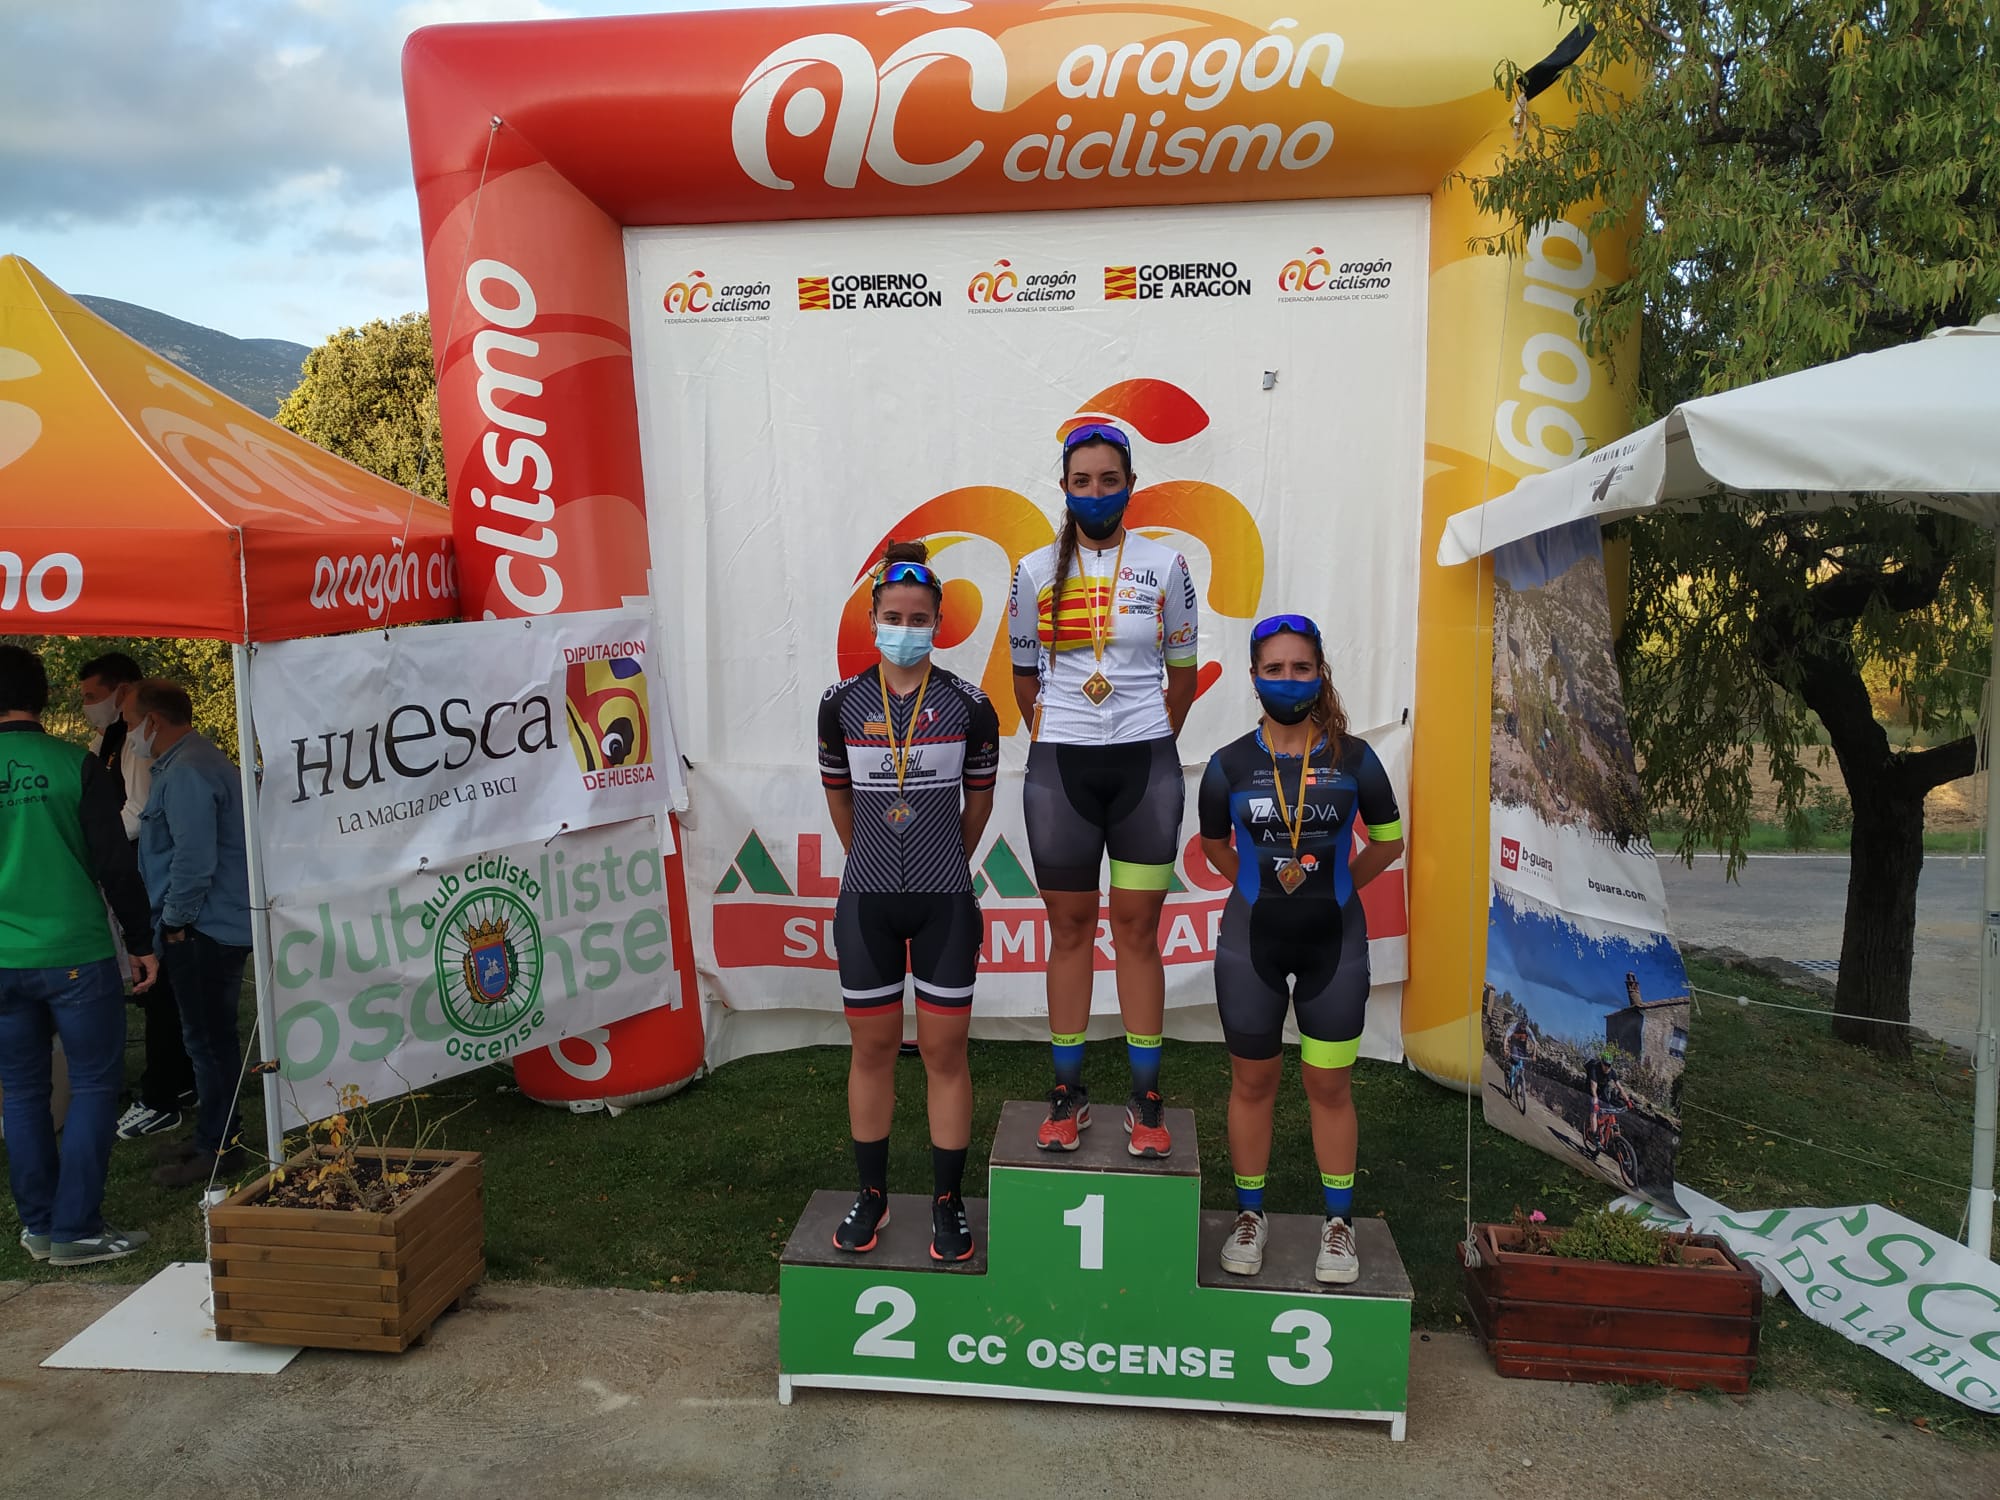 Gran jornada de ciclismo la vivida con la celebración de los Campeonatos de Aragón Ruta